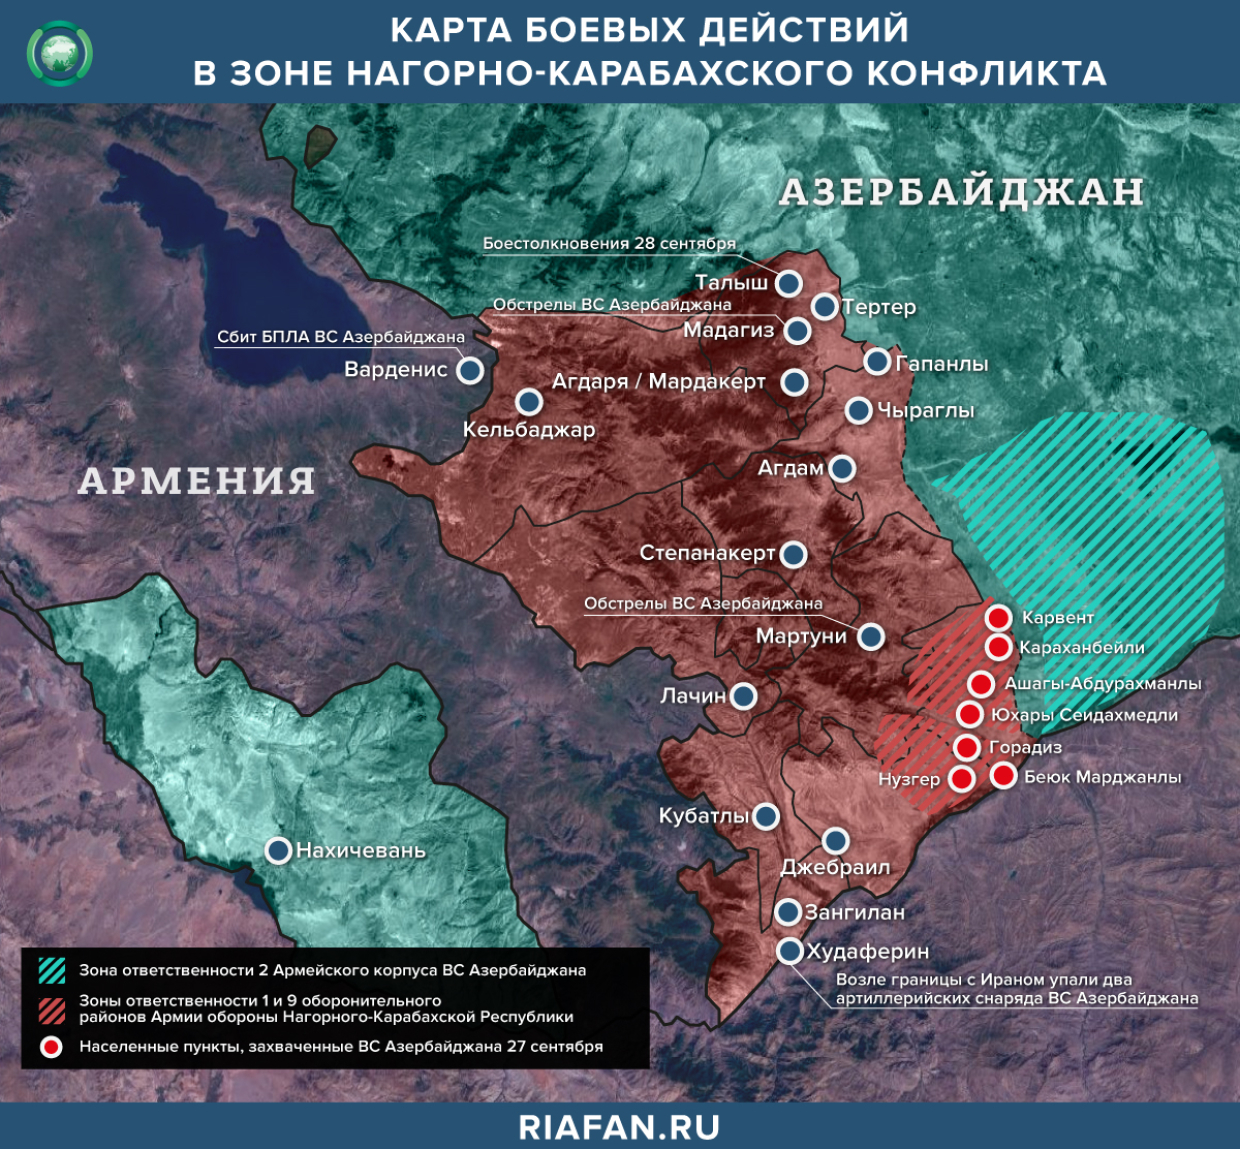 Карта боевых действий в зоне Нагорно-карабахского конфликта